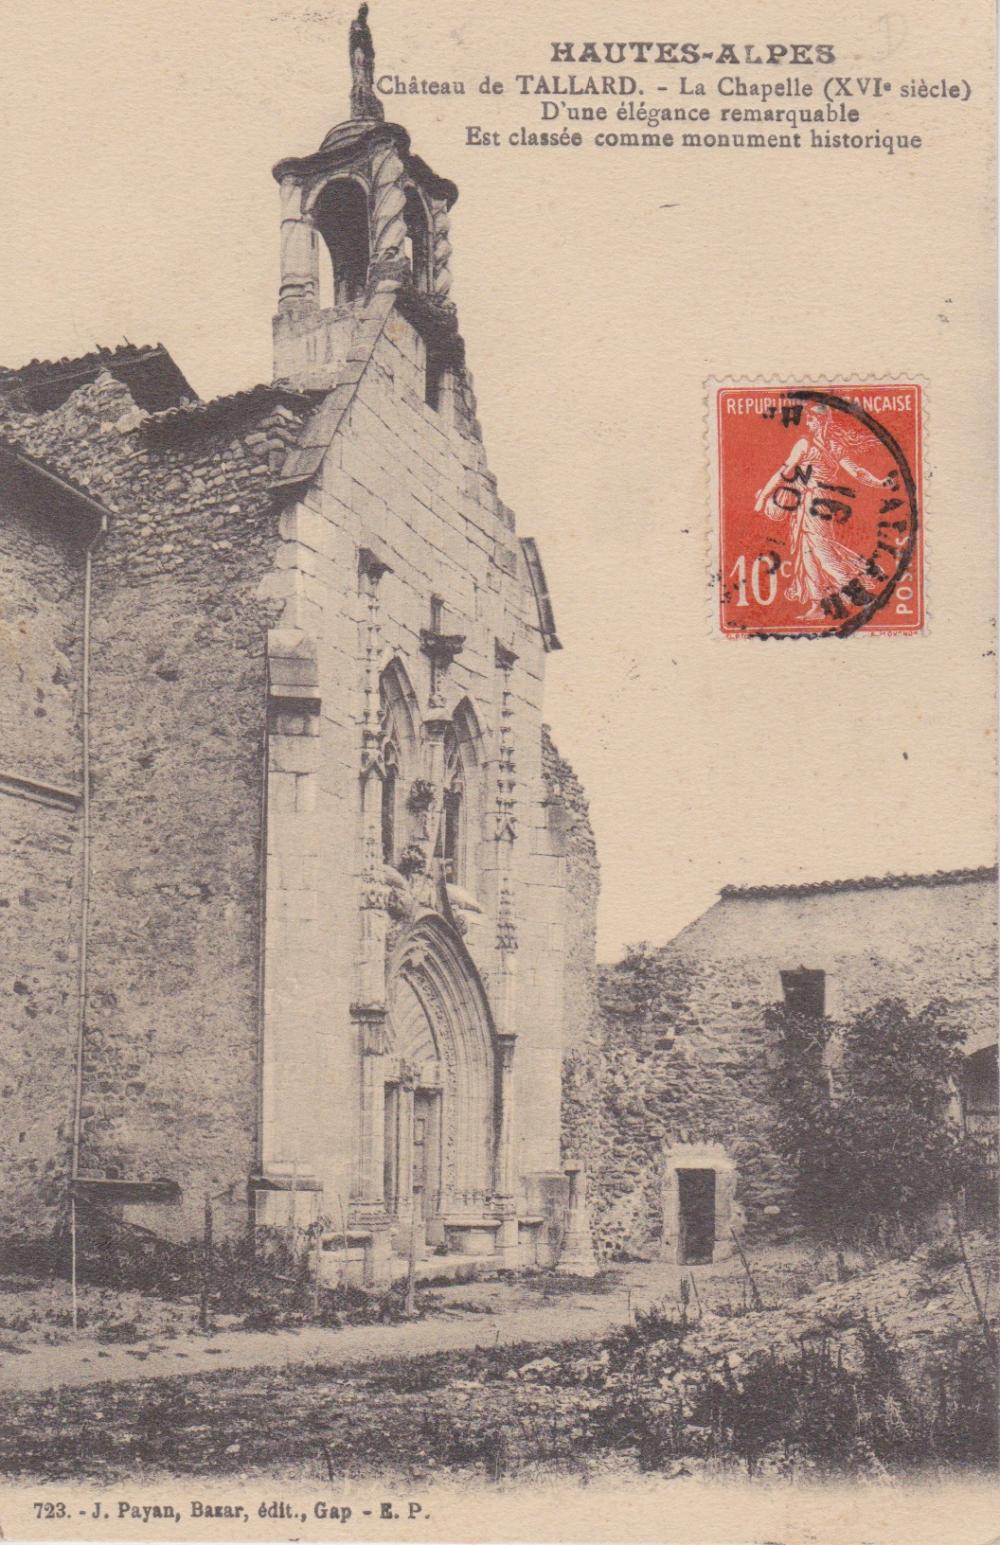 Chateau de Tallard - La Chapelle (XVI°siècle) d'une élégance remarquable est classée comme monument historique